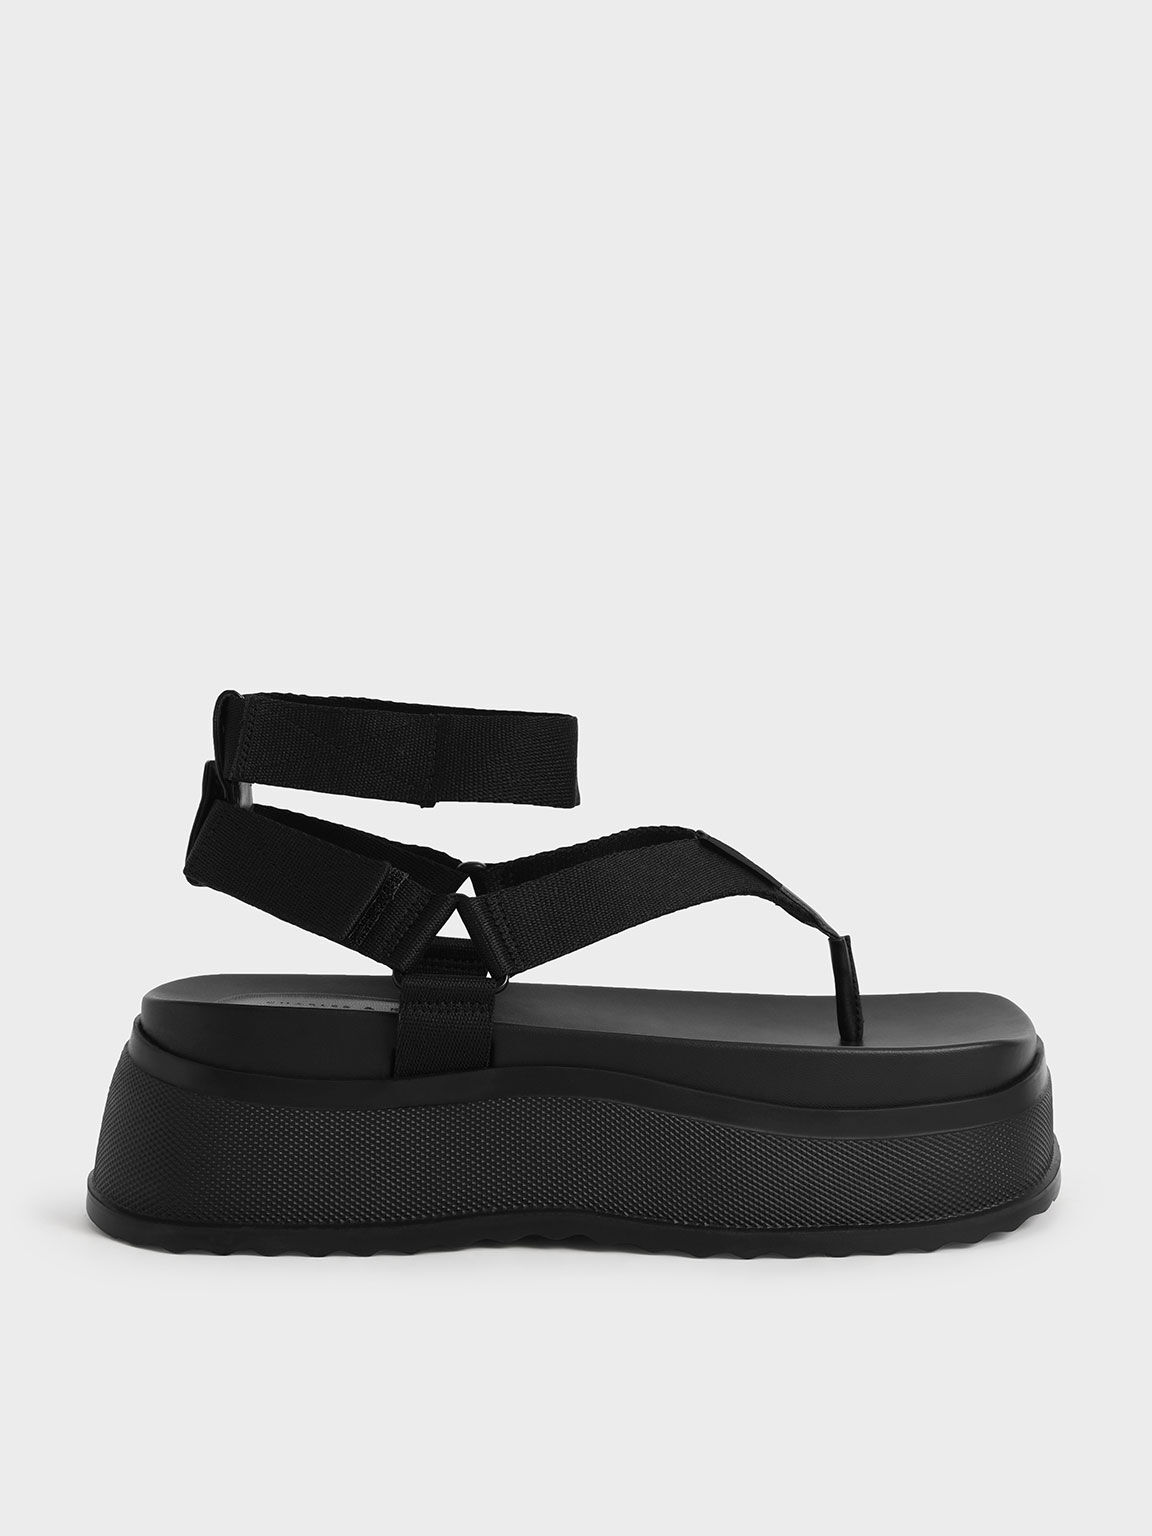 Sandal Thong Joss Flatform Ankle-Strap, Black, hi-res